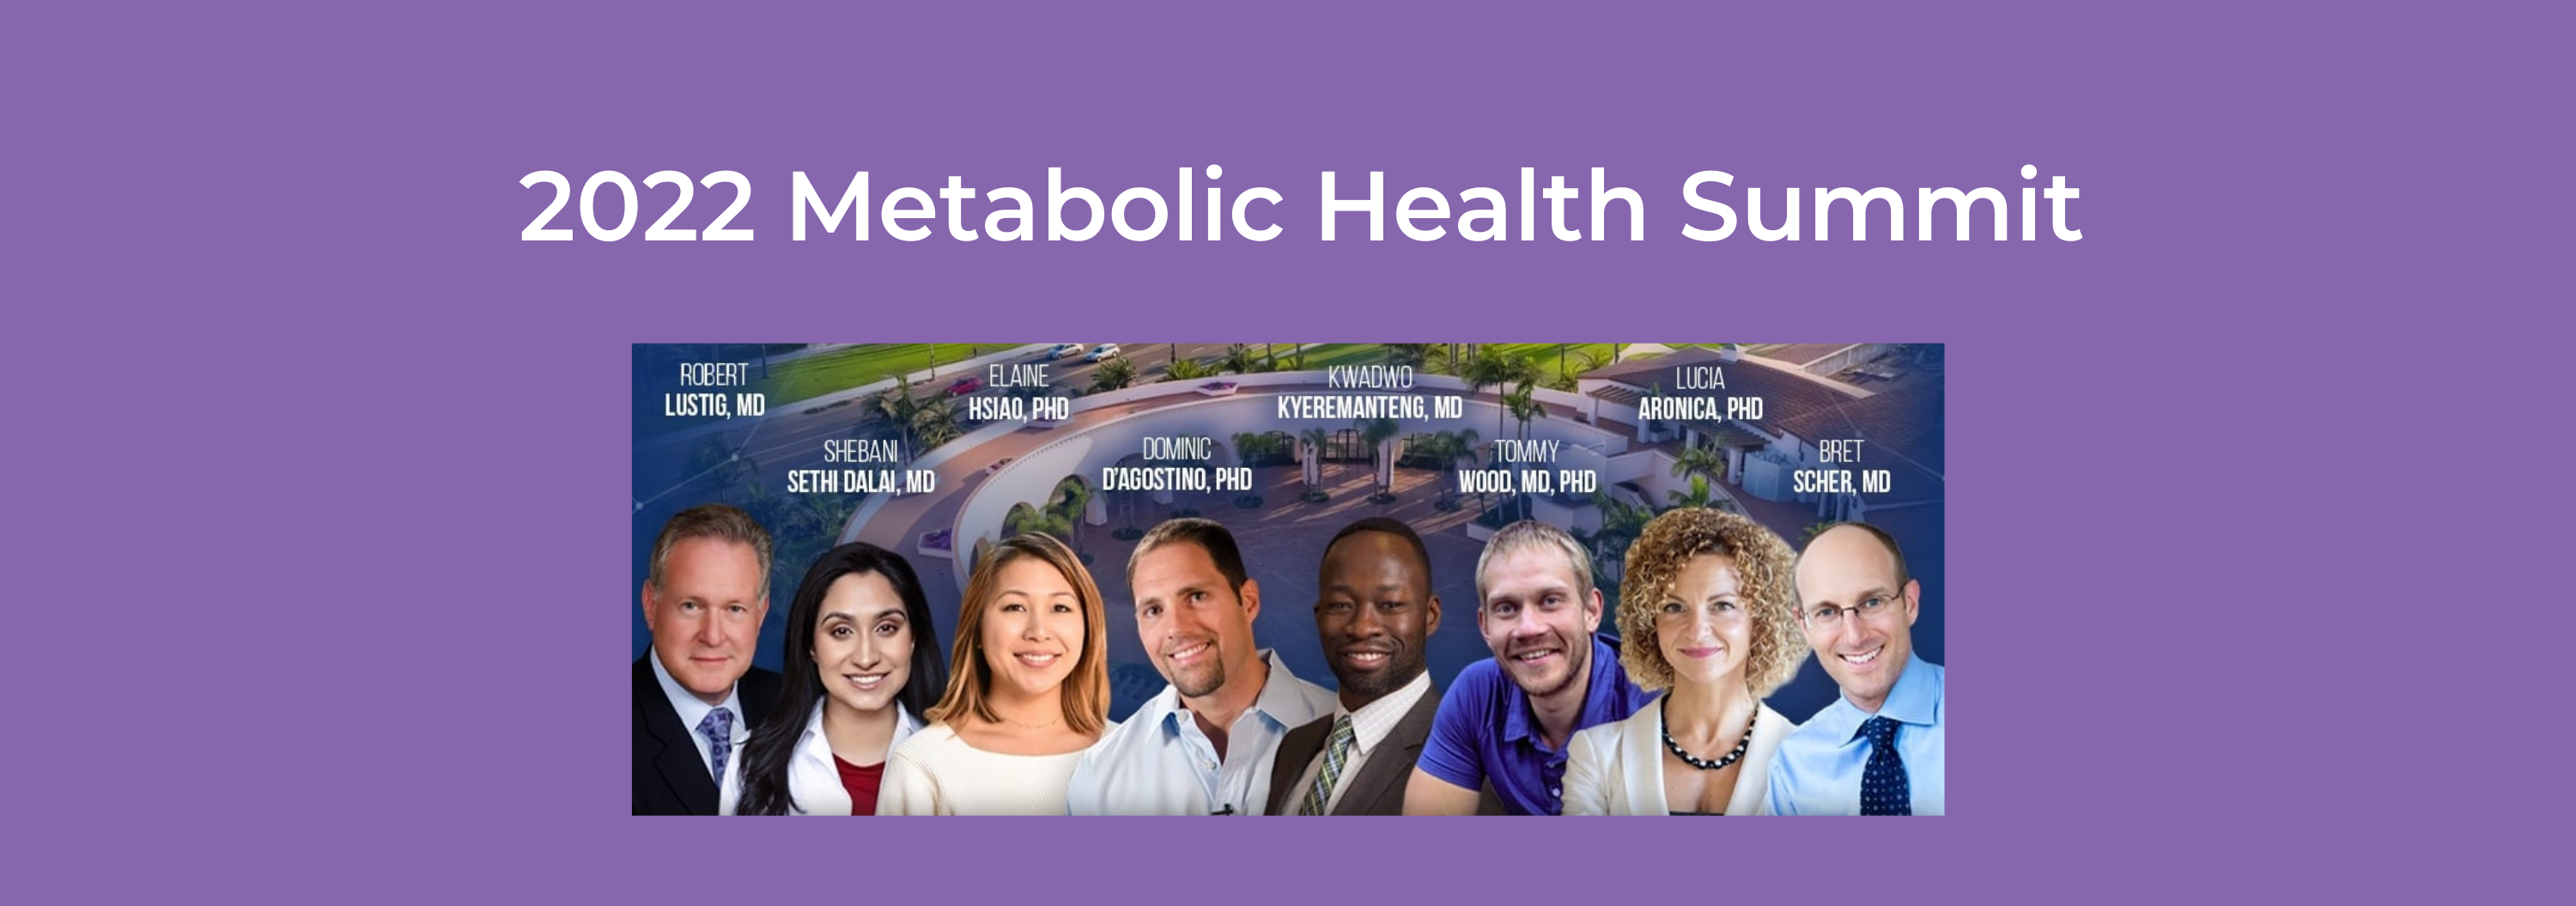 2022 Metabolic Health Summit Banner